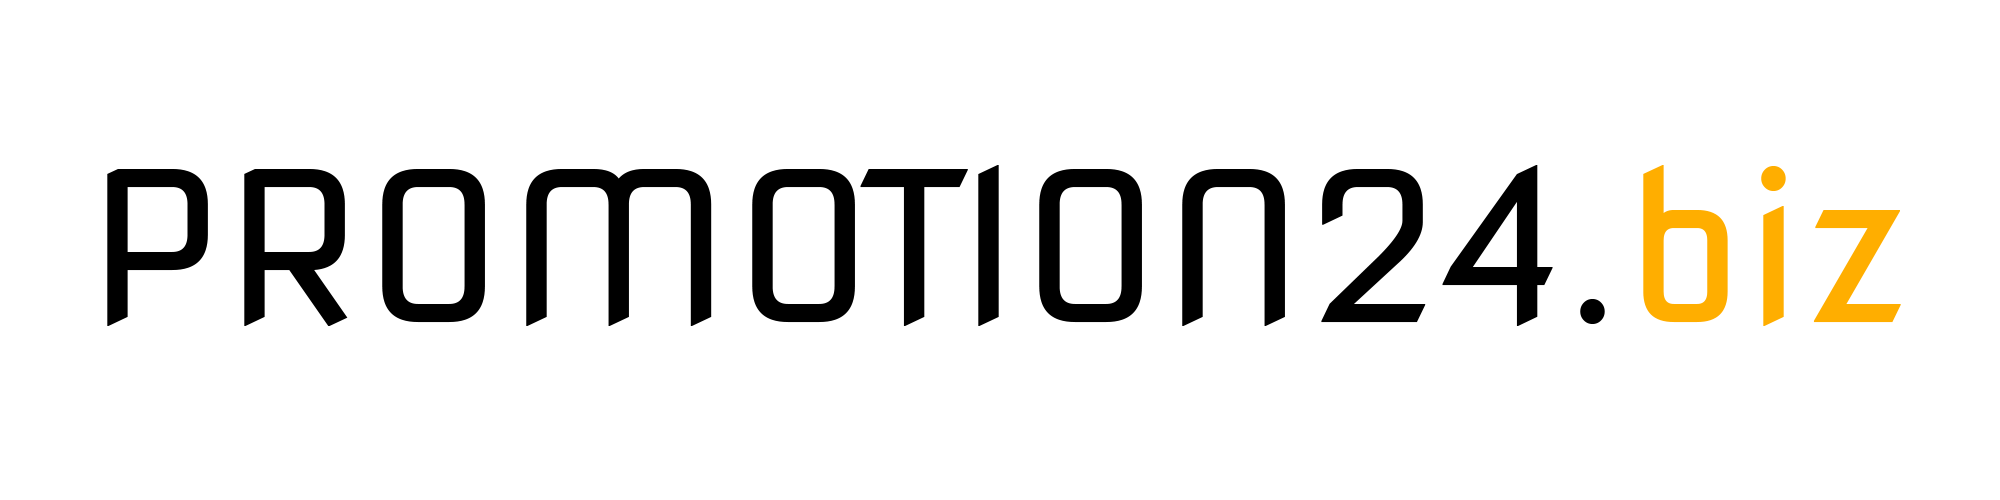 Logo von PROMOTION24.biz